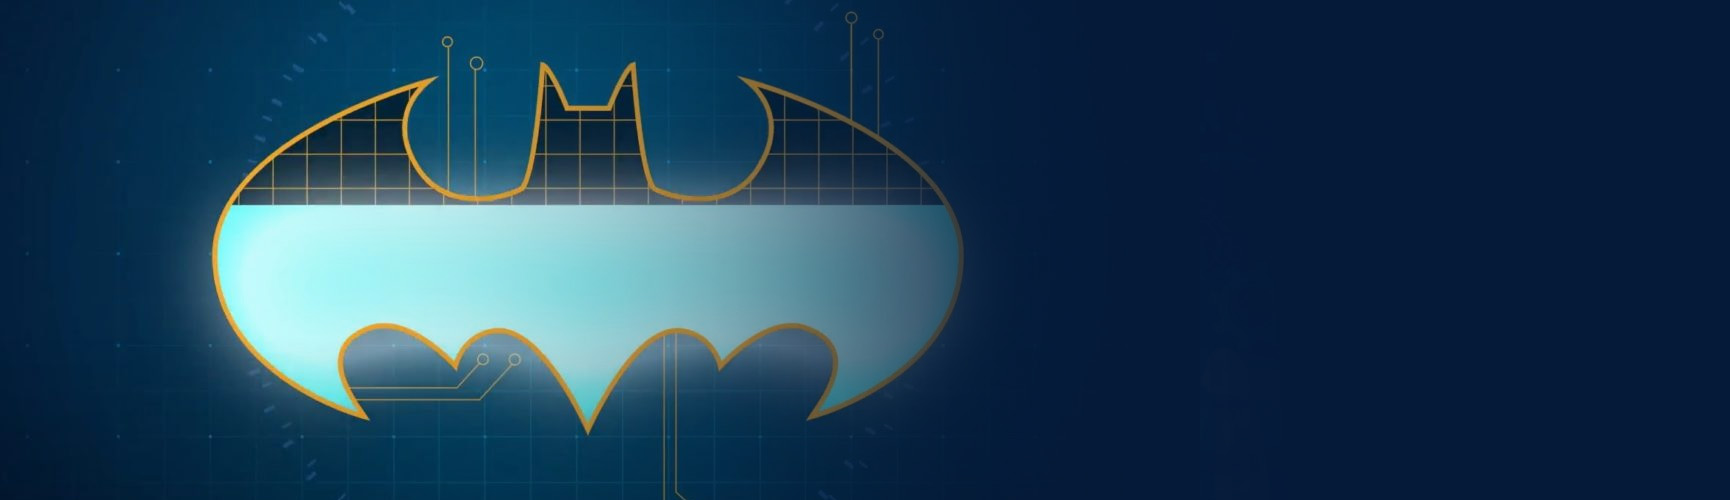 O Gêmeo Digital do Batman: como o Digital Twin pode ajudar a criar tecnologias superavançadas